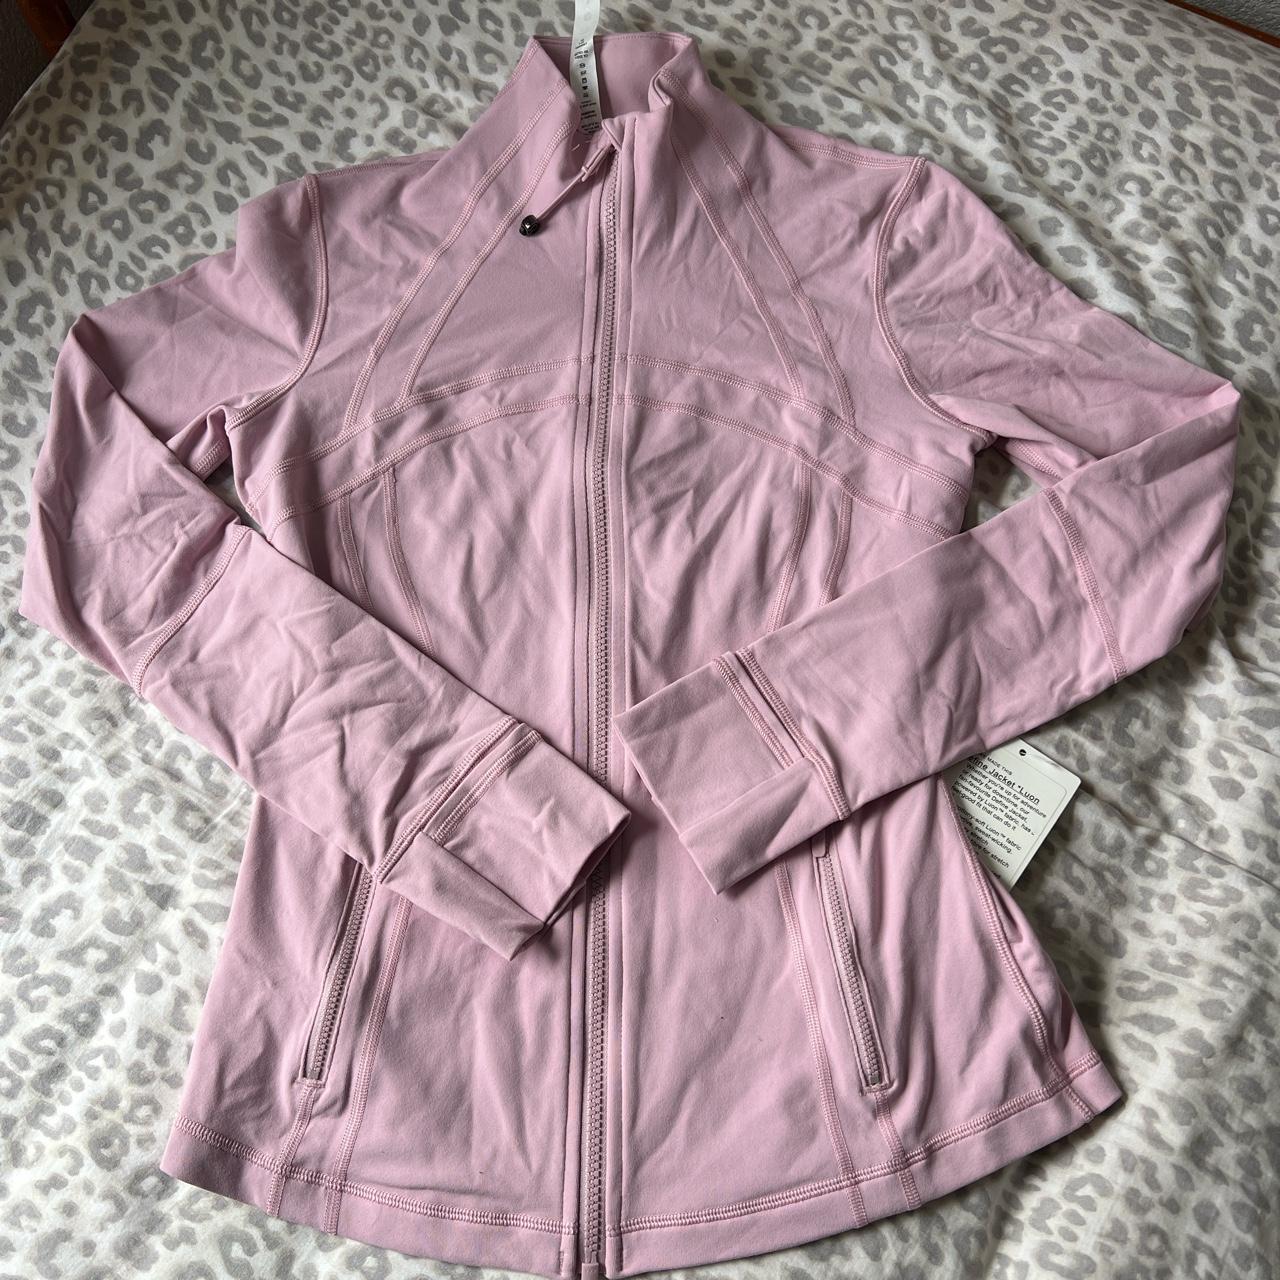 NWT Lululemon Define Jacket *Luon Pink Peony Size 8 Ireland